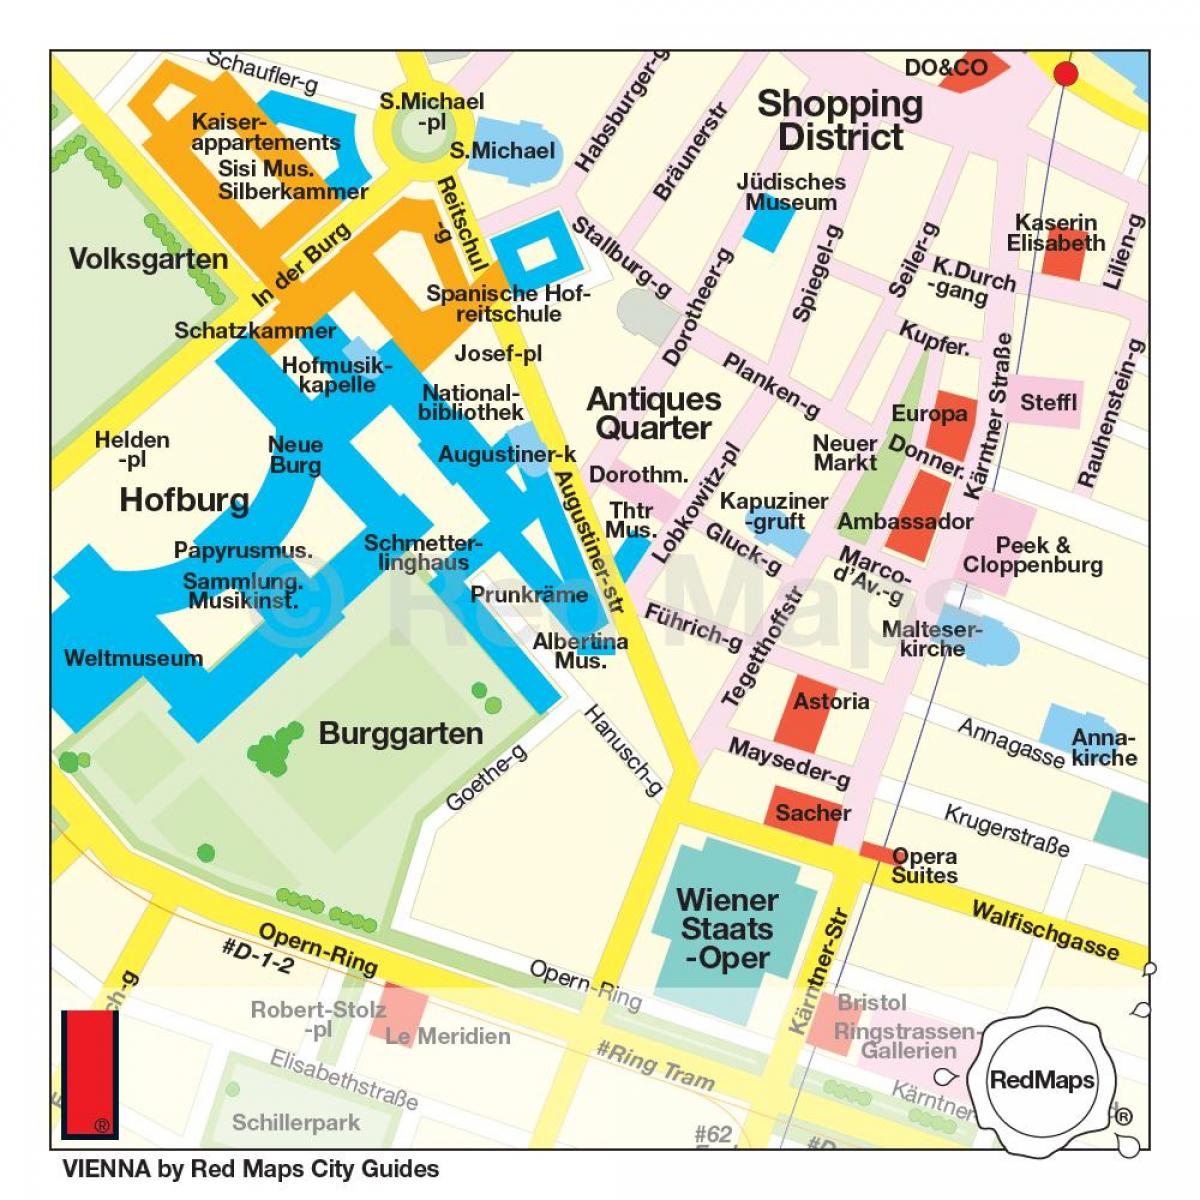 Kart over Wien shopping